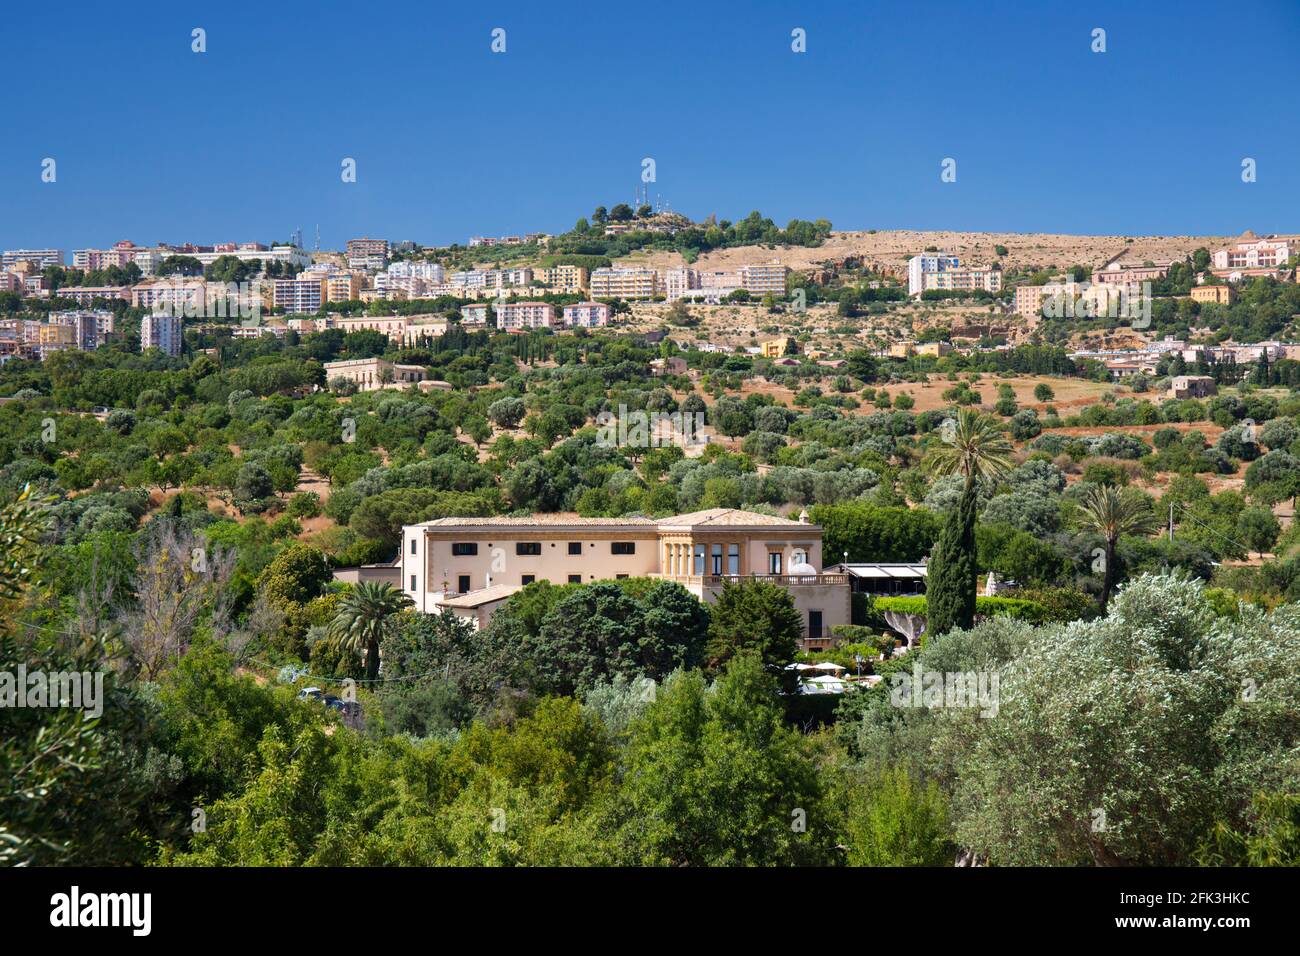 Agrigento, Sicilia, Italia. Vista sulla città attraverso il verde paesaggio di ulivi e mandorli, Valle dei Templi, Hotel Villa Athena prominente. Foto Stock